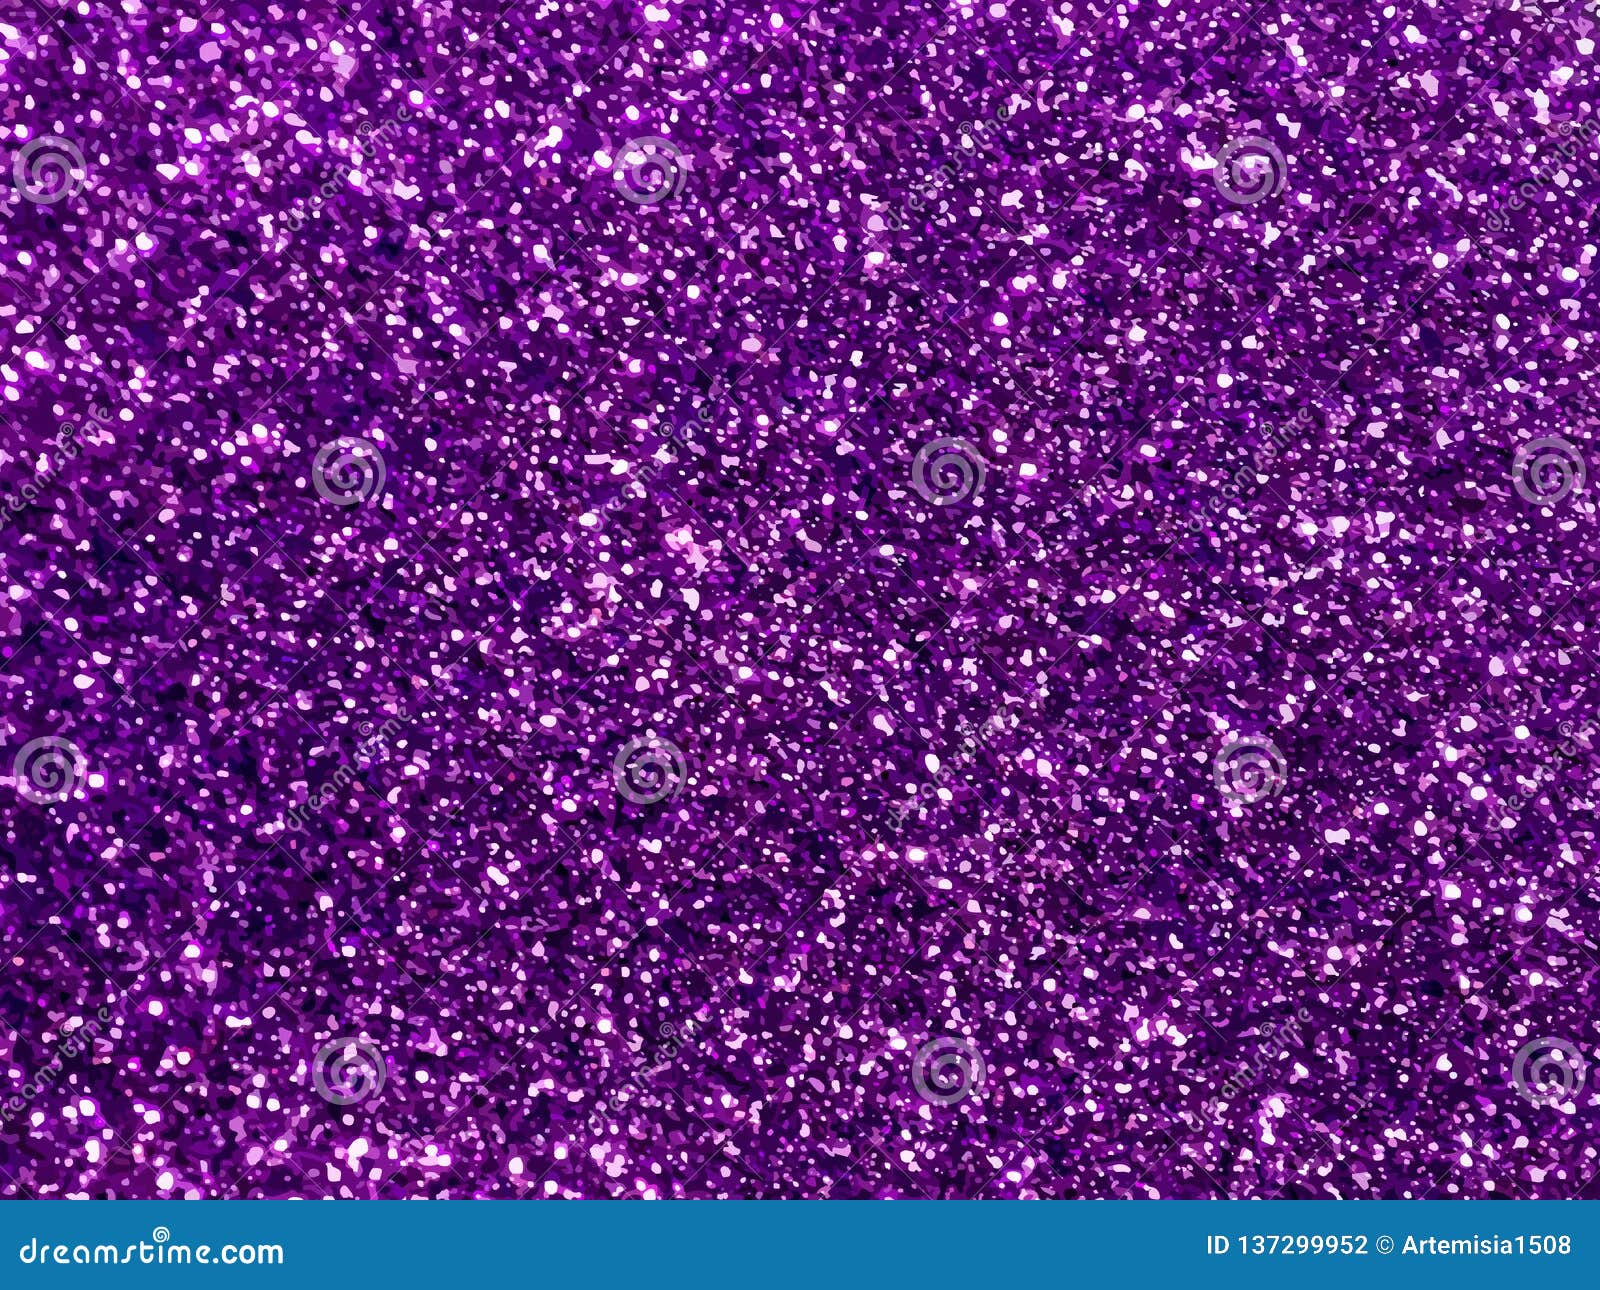 Nền tím phấn hoa tạo ra sự pha trộn tuyệt vời giữa màu tím và sự lấp lánh. Hình ảnh liên quan sẽ giúp bạn thấy được vẻ đẹp đầy ma mị và huyền bí của nền tím phấn hoa.